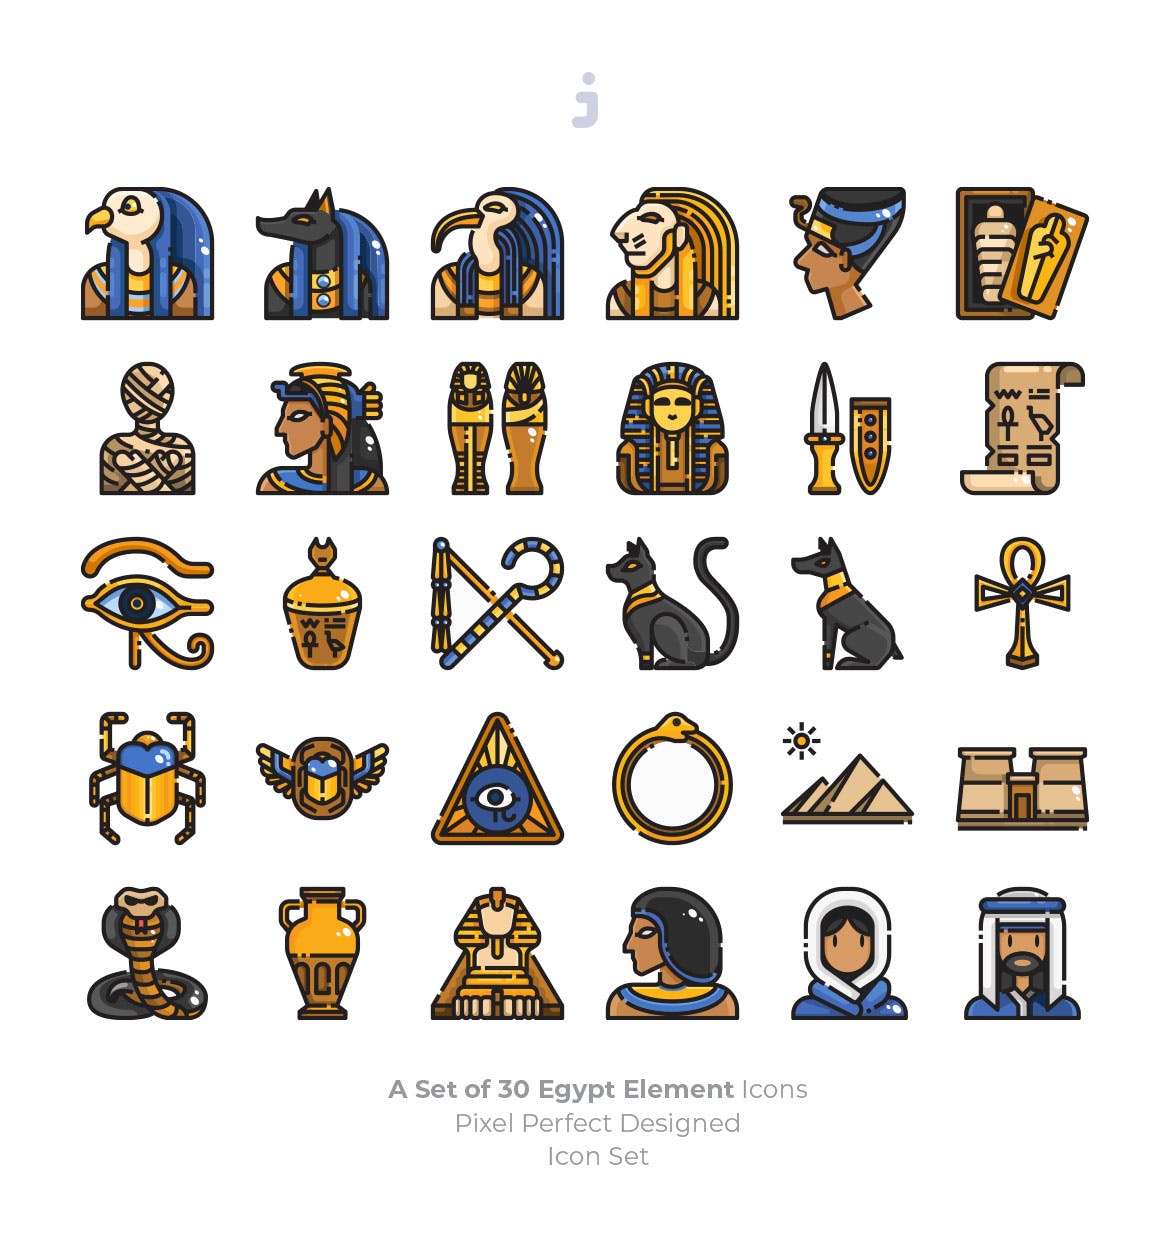 埃及民族元素完美像素矢量图标 30 Egypt Element Icons设计素材模板